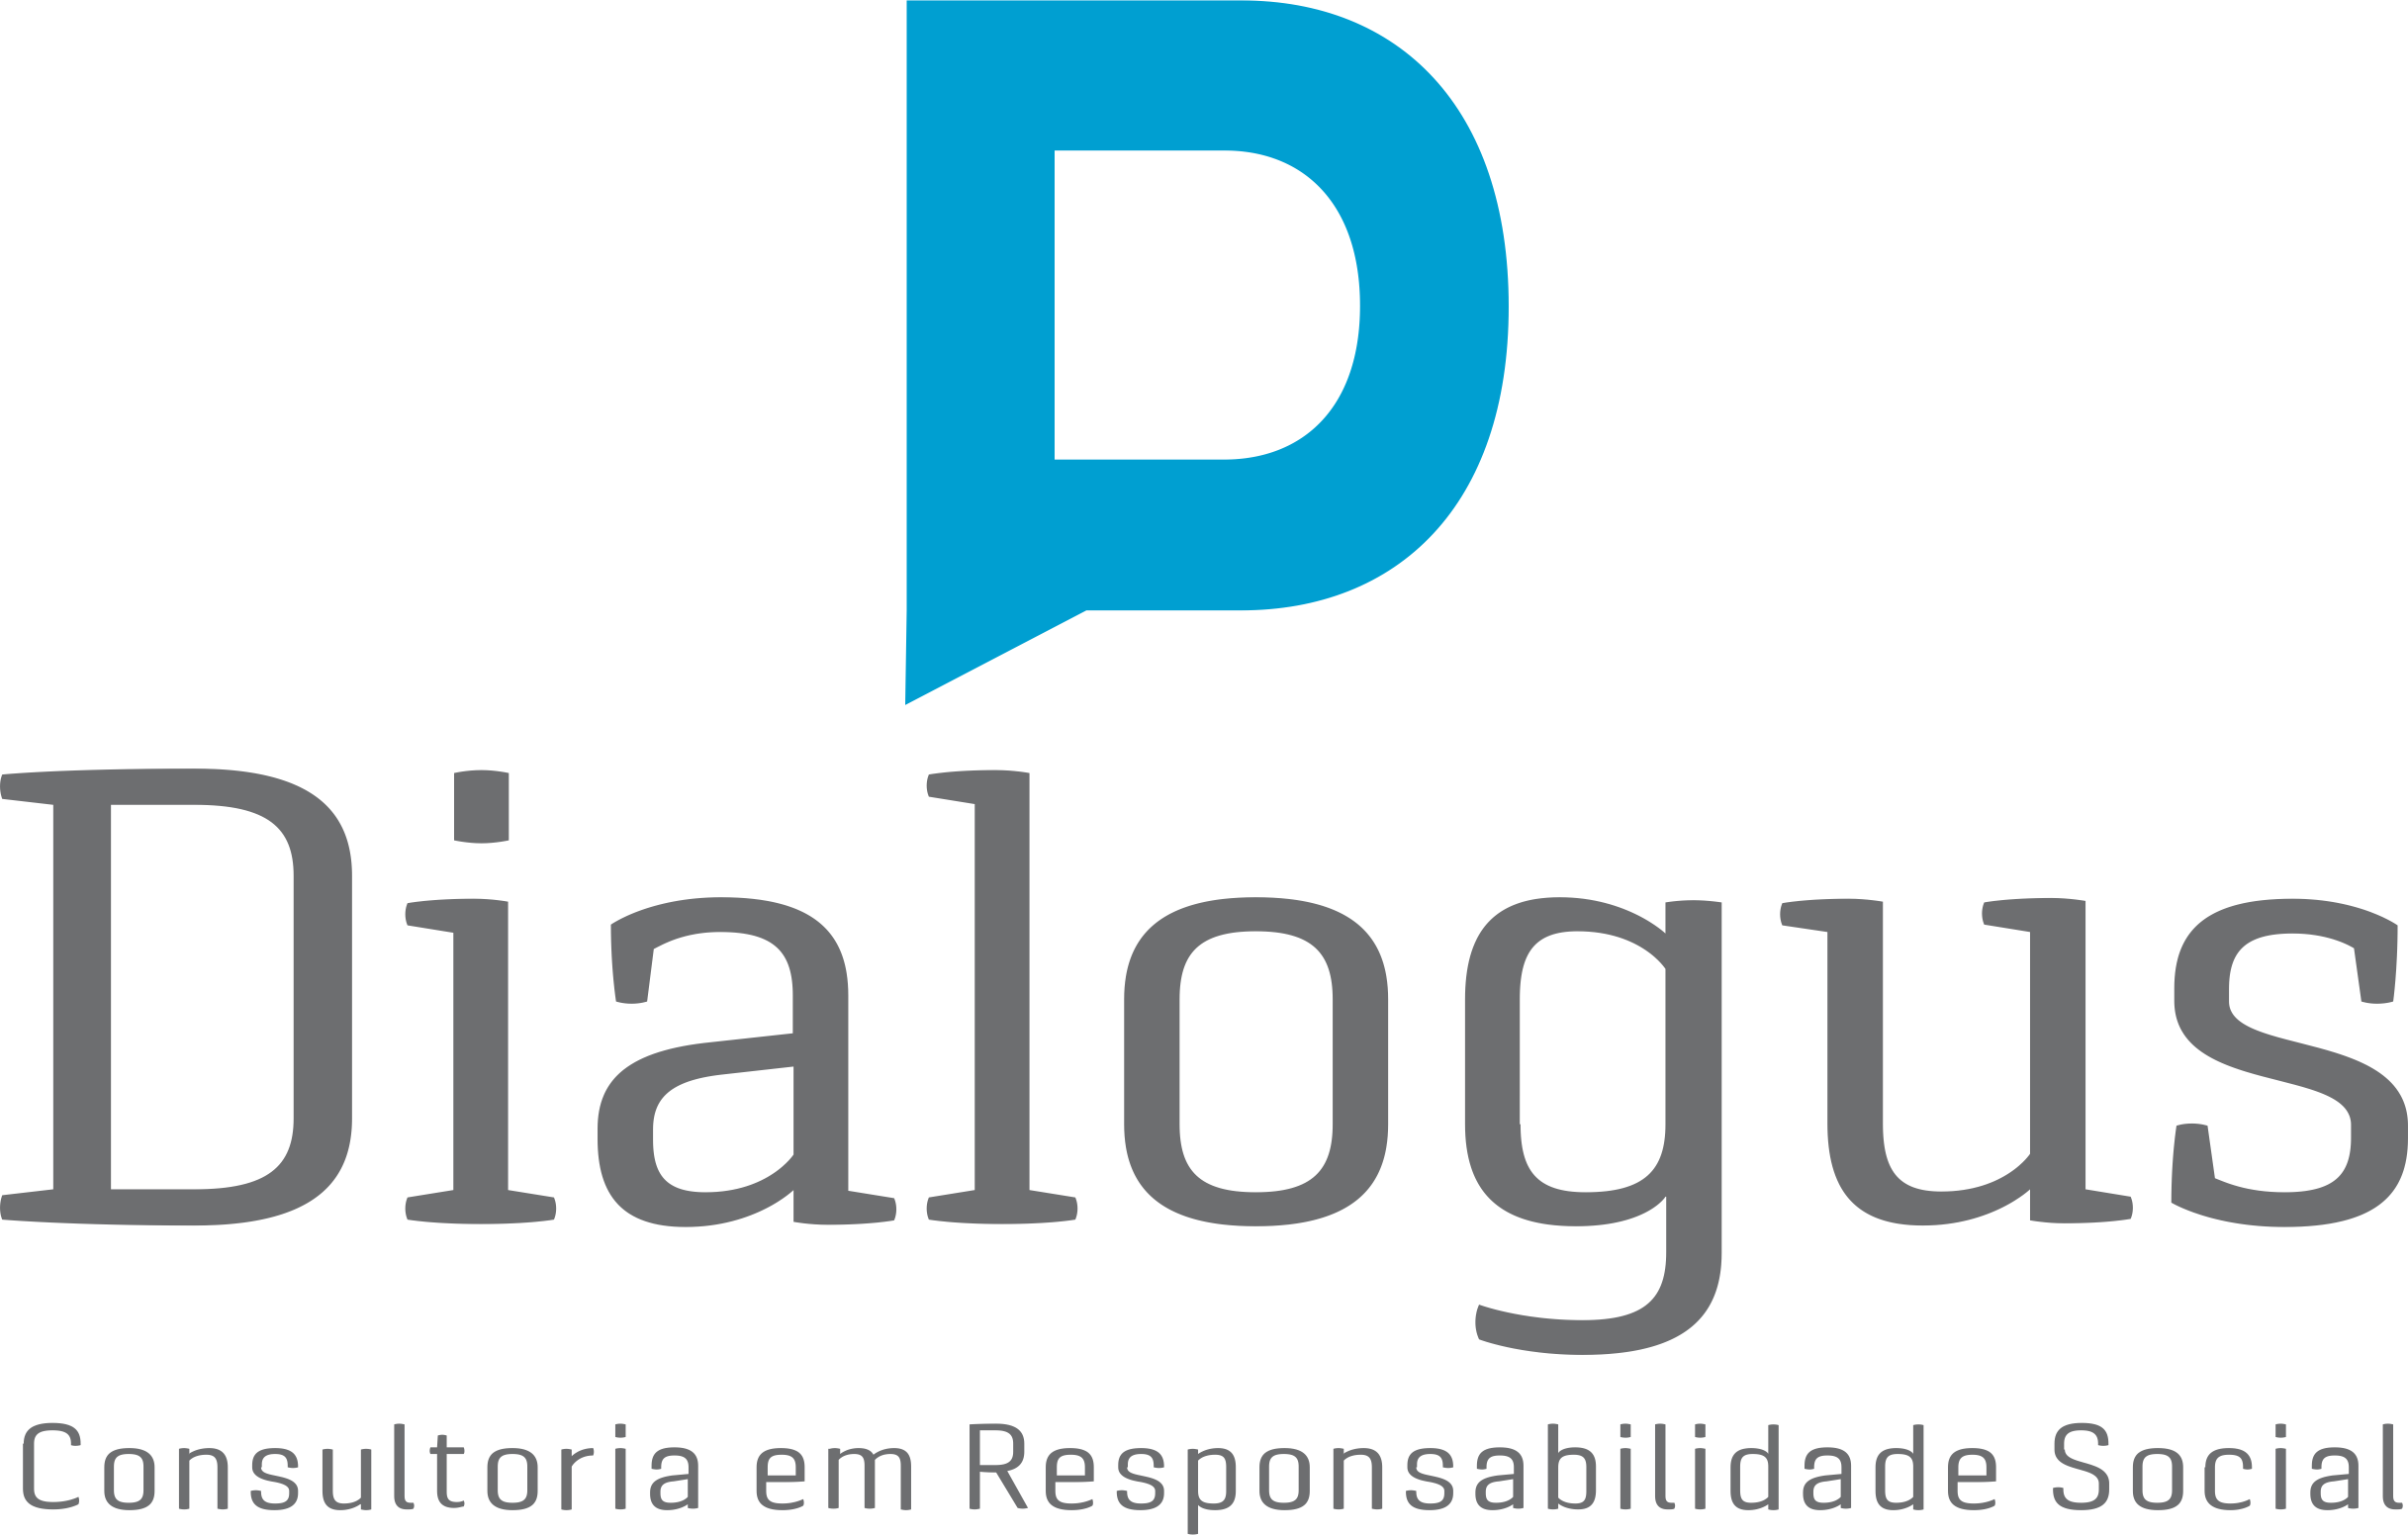 Dialogus Responsabilidade Social - Consultoria - Programa de Voluntariado para OSCS - Fortaleza/CE